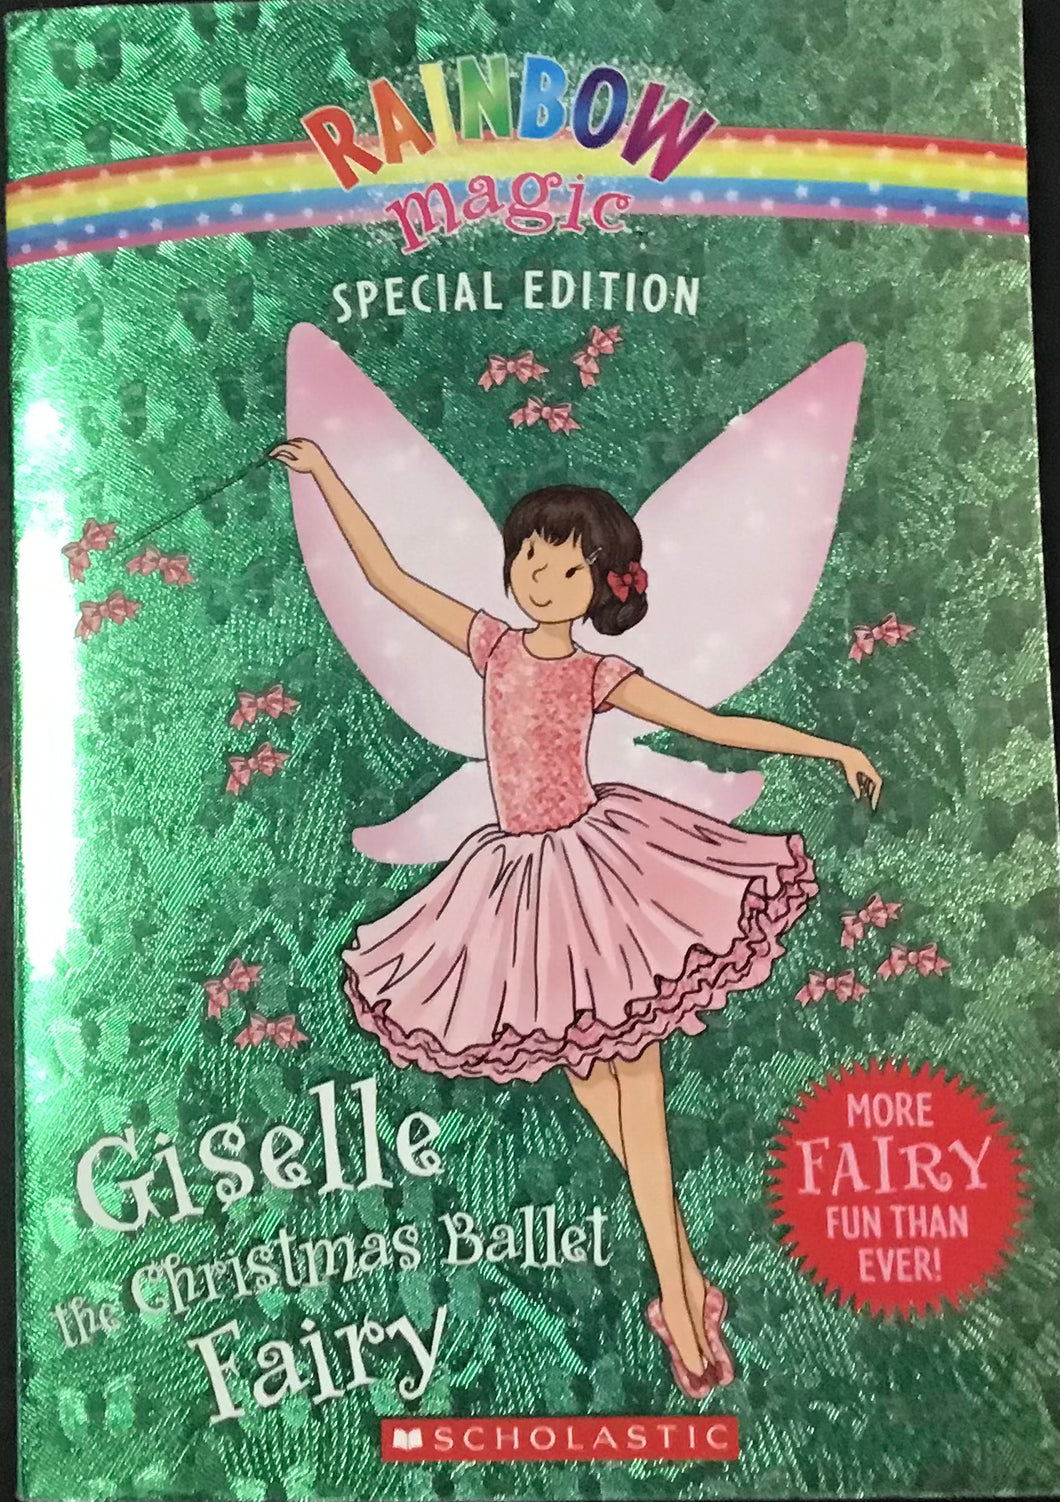 Giselle The Christmas Ballet Fairy, Daisy Meadows